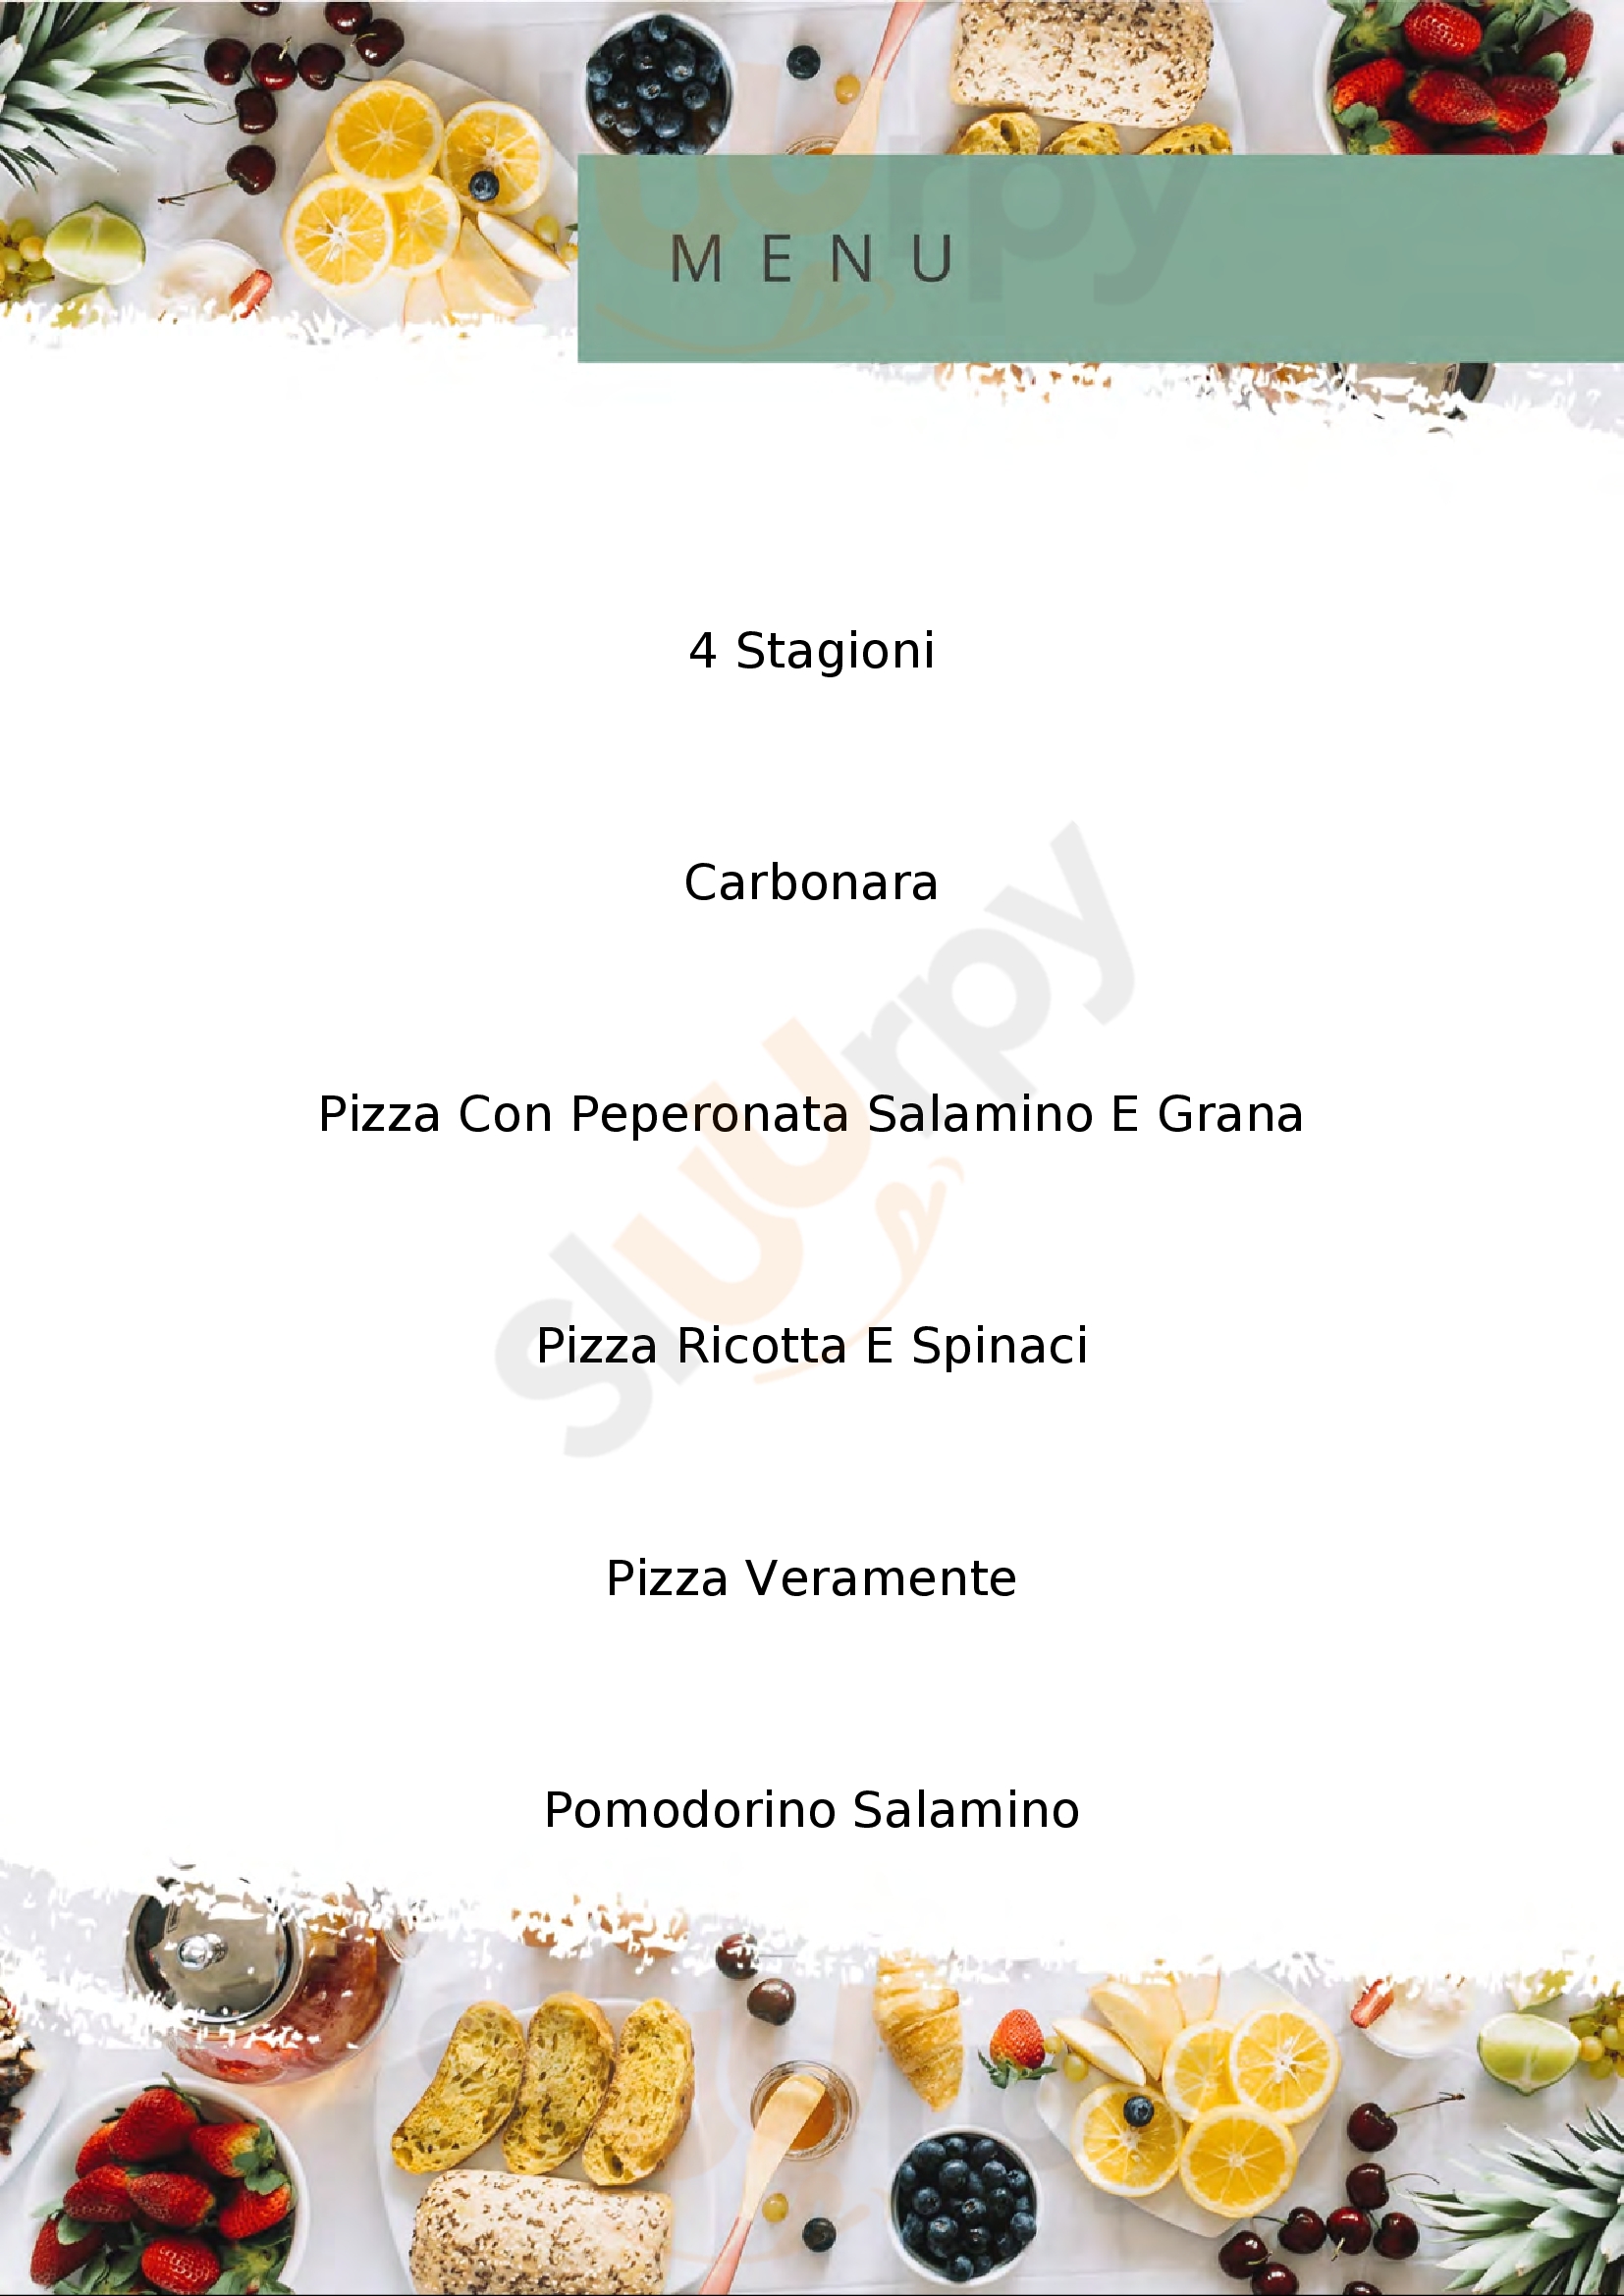 Pizzeria Blue Star Di Naclerio Cristina Montebello Vicentino menù 1 pagina